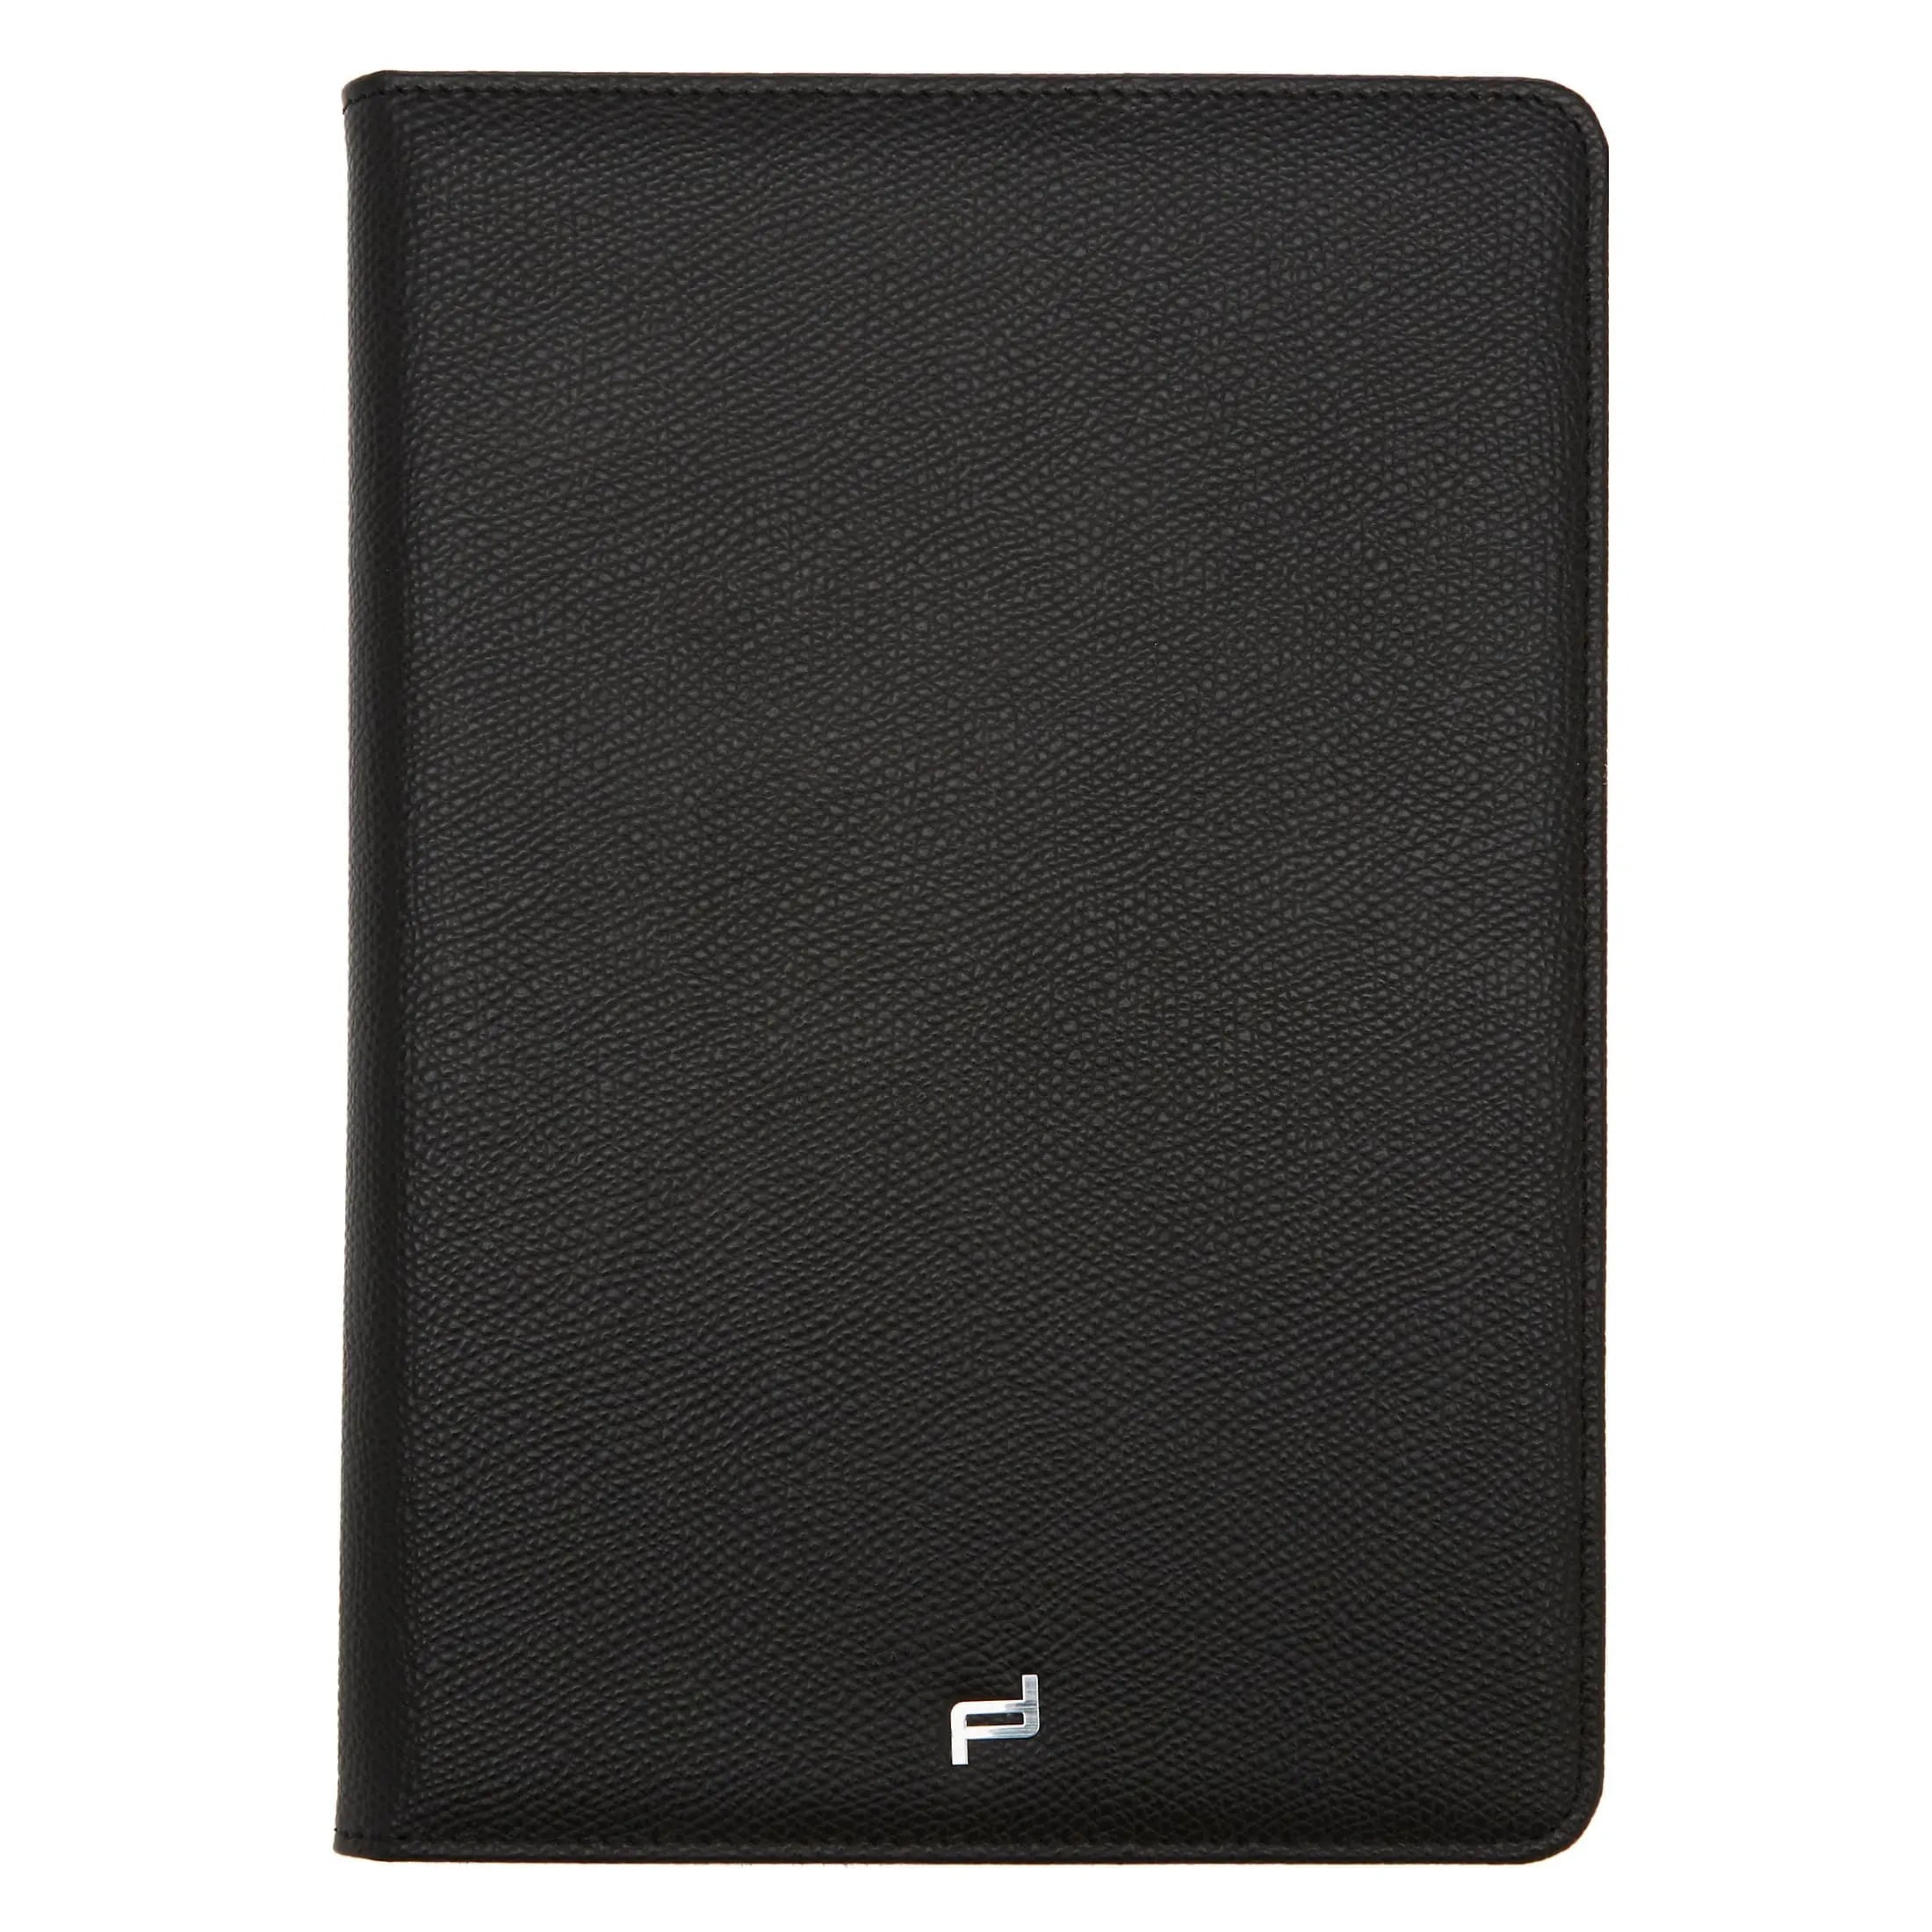 Porsche Design French Classic 3.0 Case für iPad Mini 2 Case 1 20 cm - black